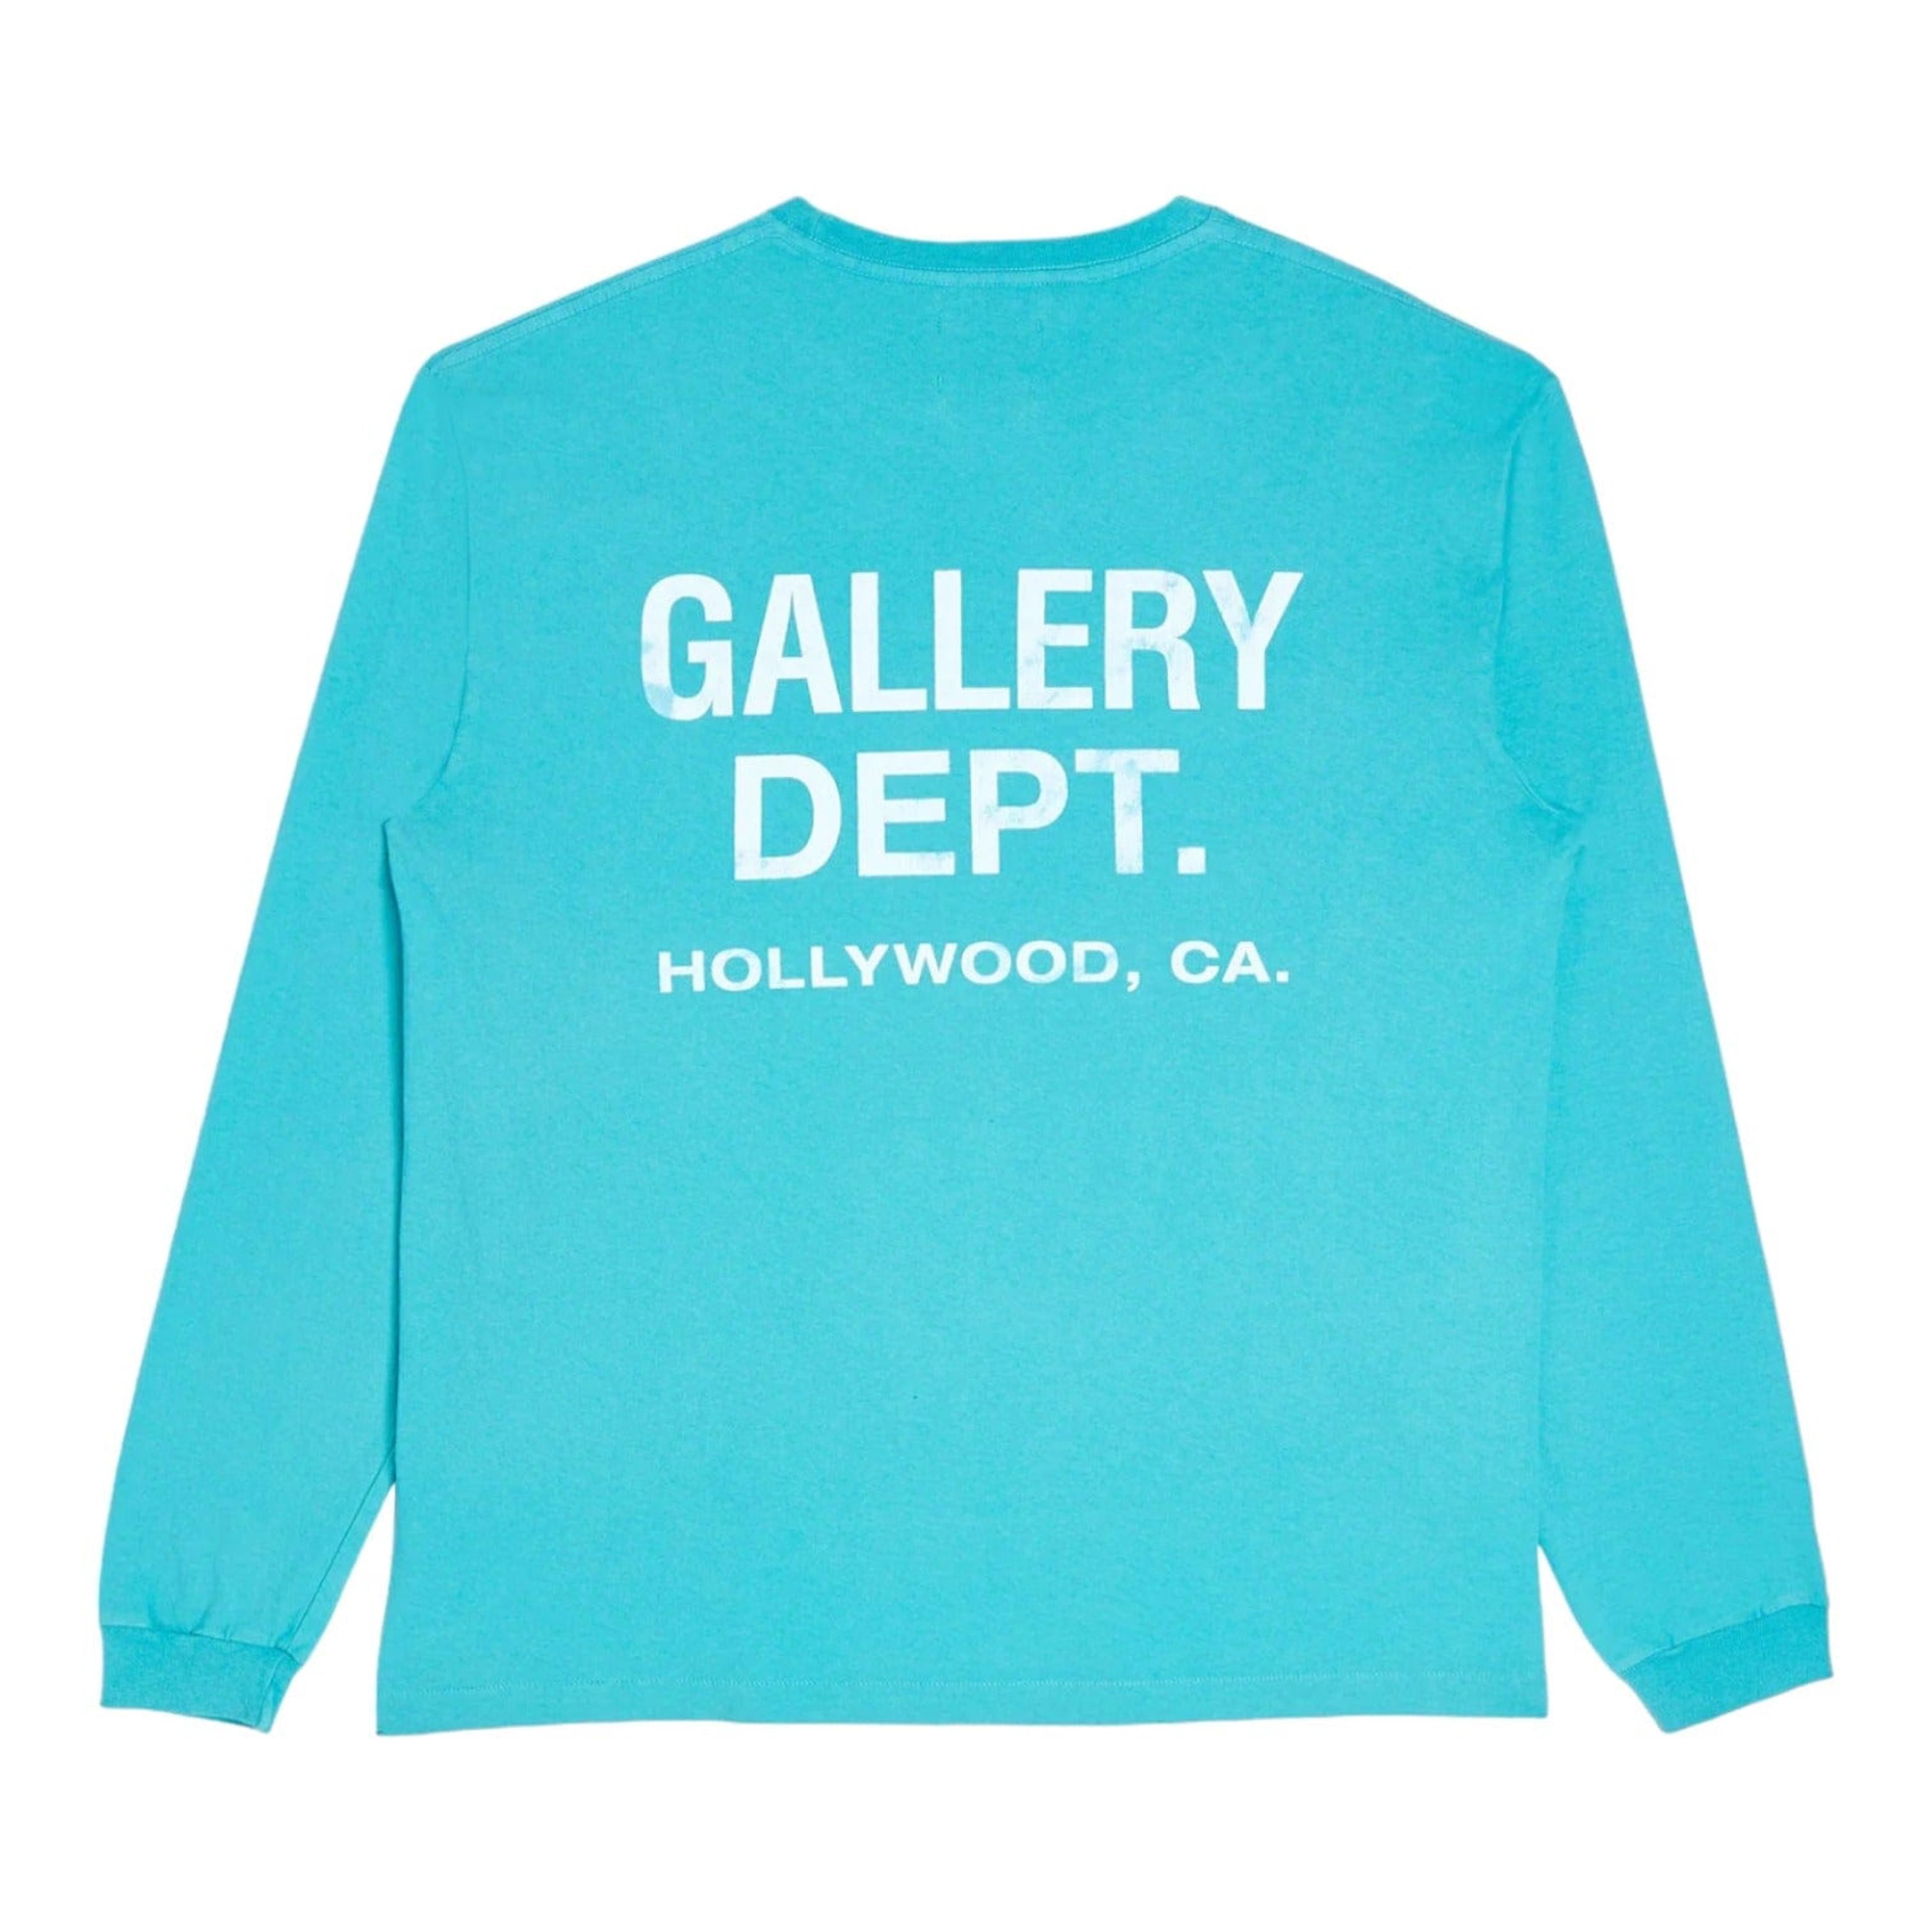 Gallery Department Souvenir Long Sleeve Tee Shirt Teal Blue